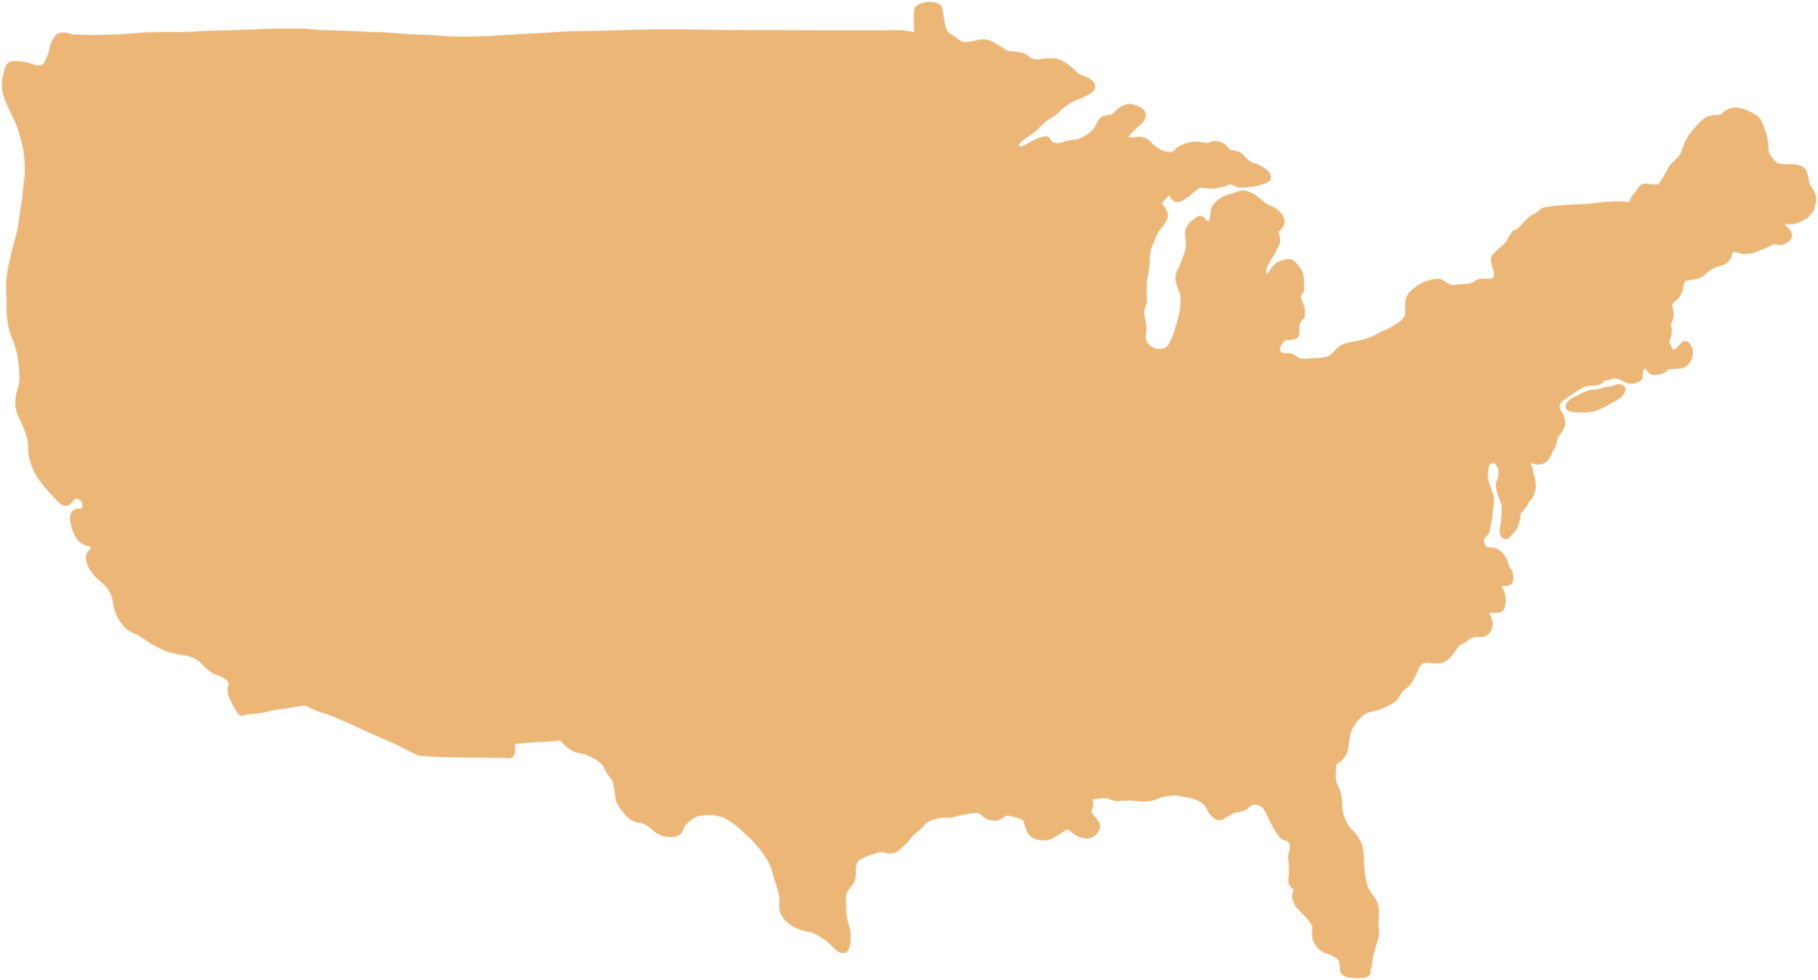 doodle desenho à mão livre do mapa do estado unido da américa. png